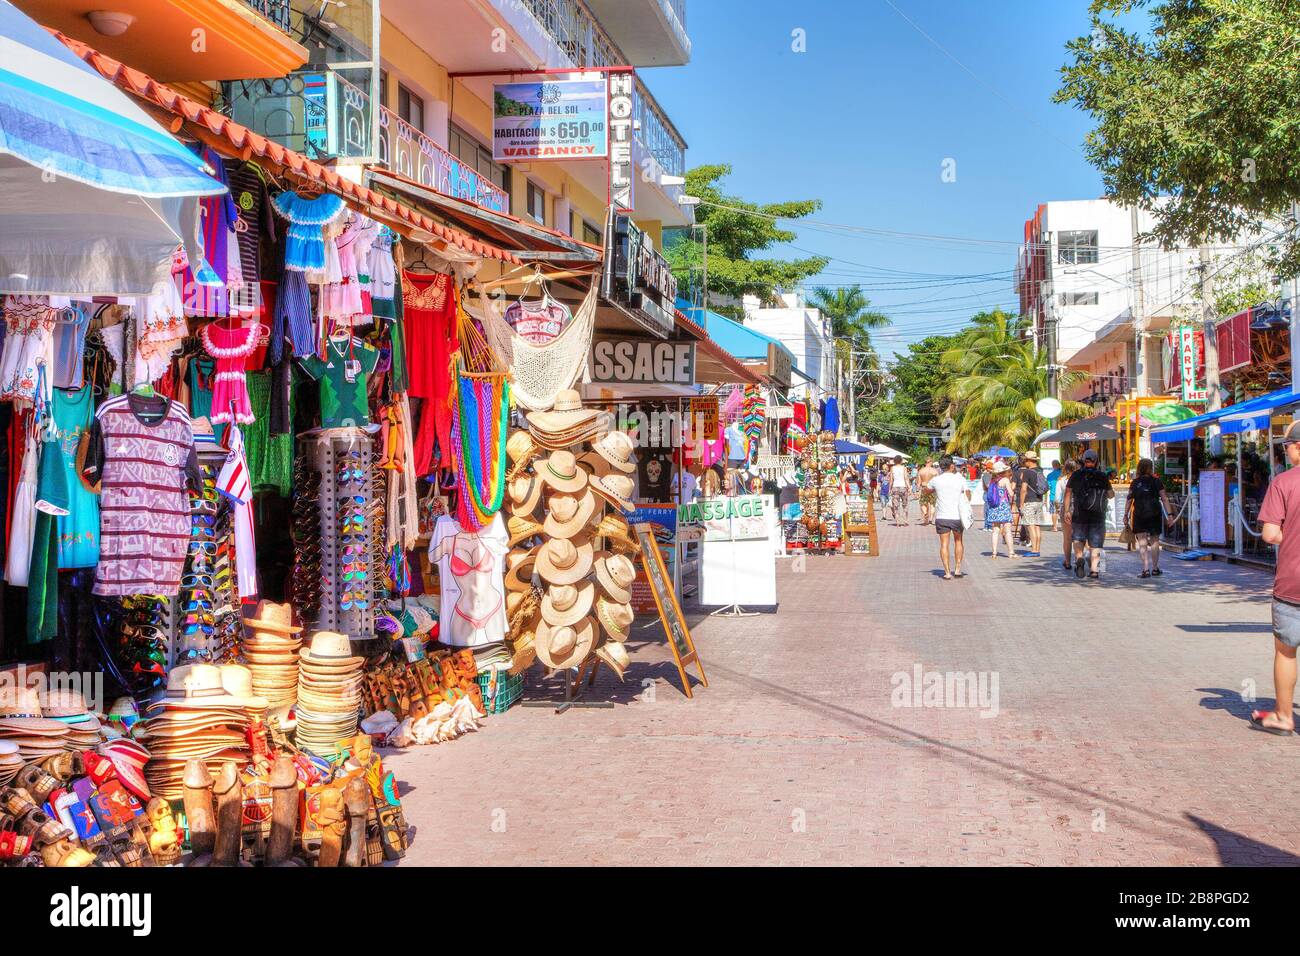 PLAYA DEL CARMEN, MEXIKO - DEC. 26, 2019: Die Besucher können an der berühmten 5th Avenue im Vergnügungsviertel Playa del Carmen in der Yucata einkaufen Stockfoto